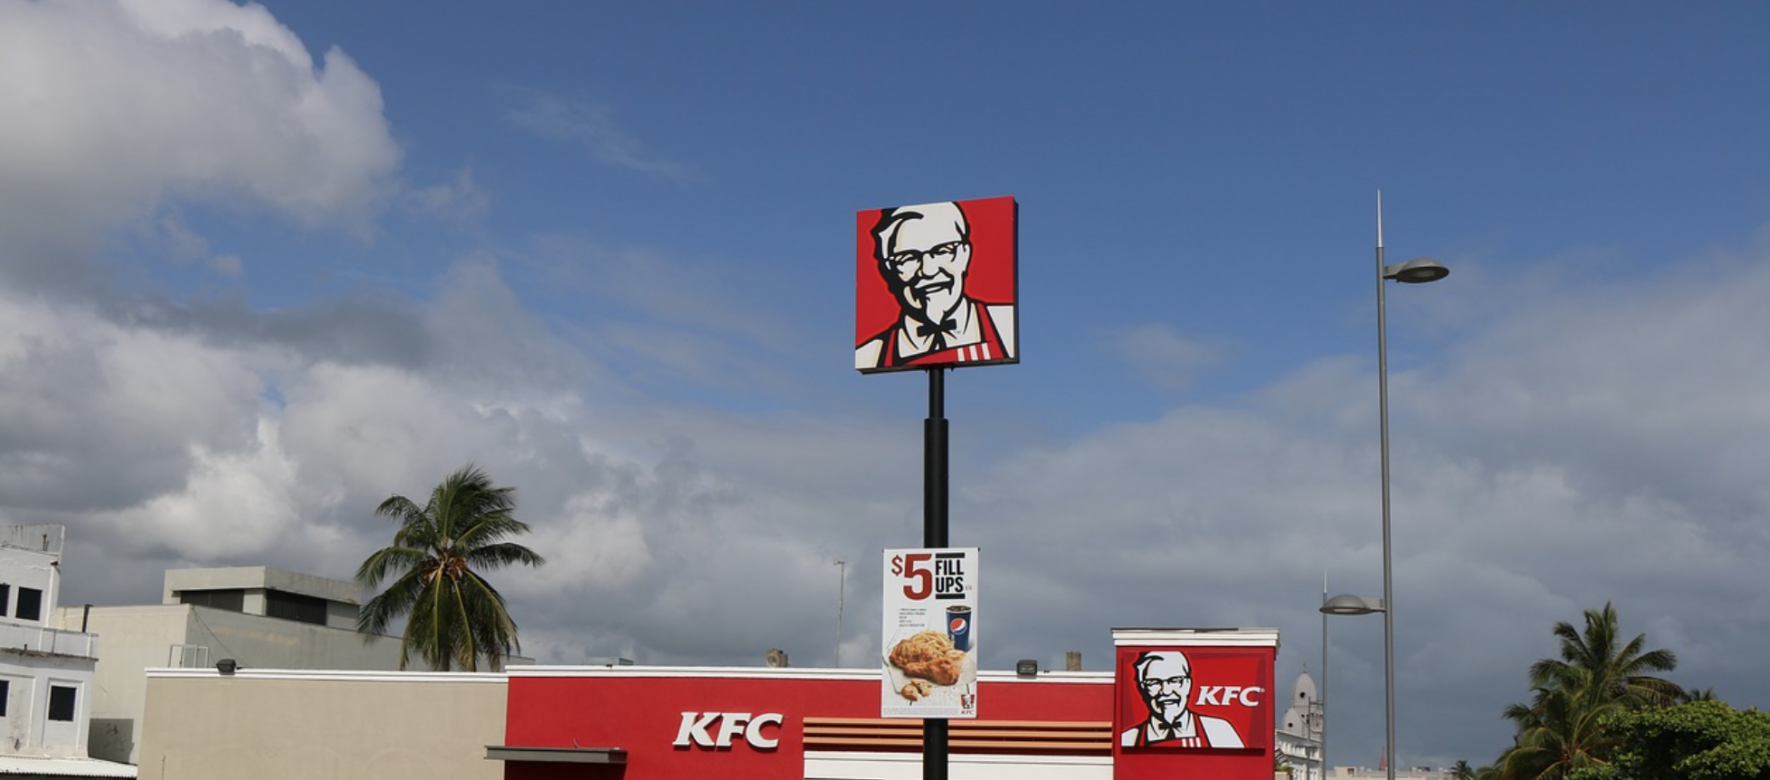 Maroc : Kentucky Fried Chicken (KFC), la chaîne américaine de restauration rapide spécialisée dans le poulet cuisiné a annoncé l’ouverture de 10 nouveaux points de vente en 2022